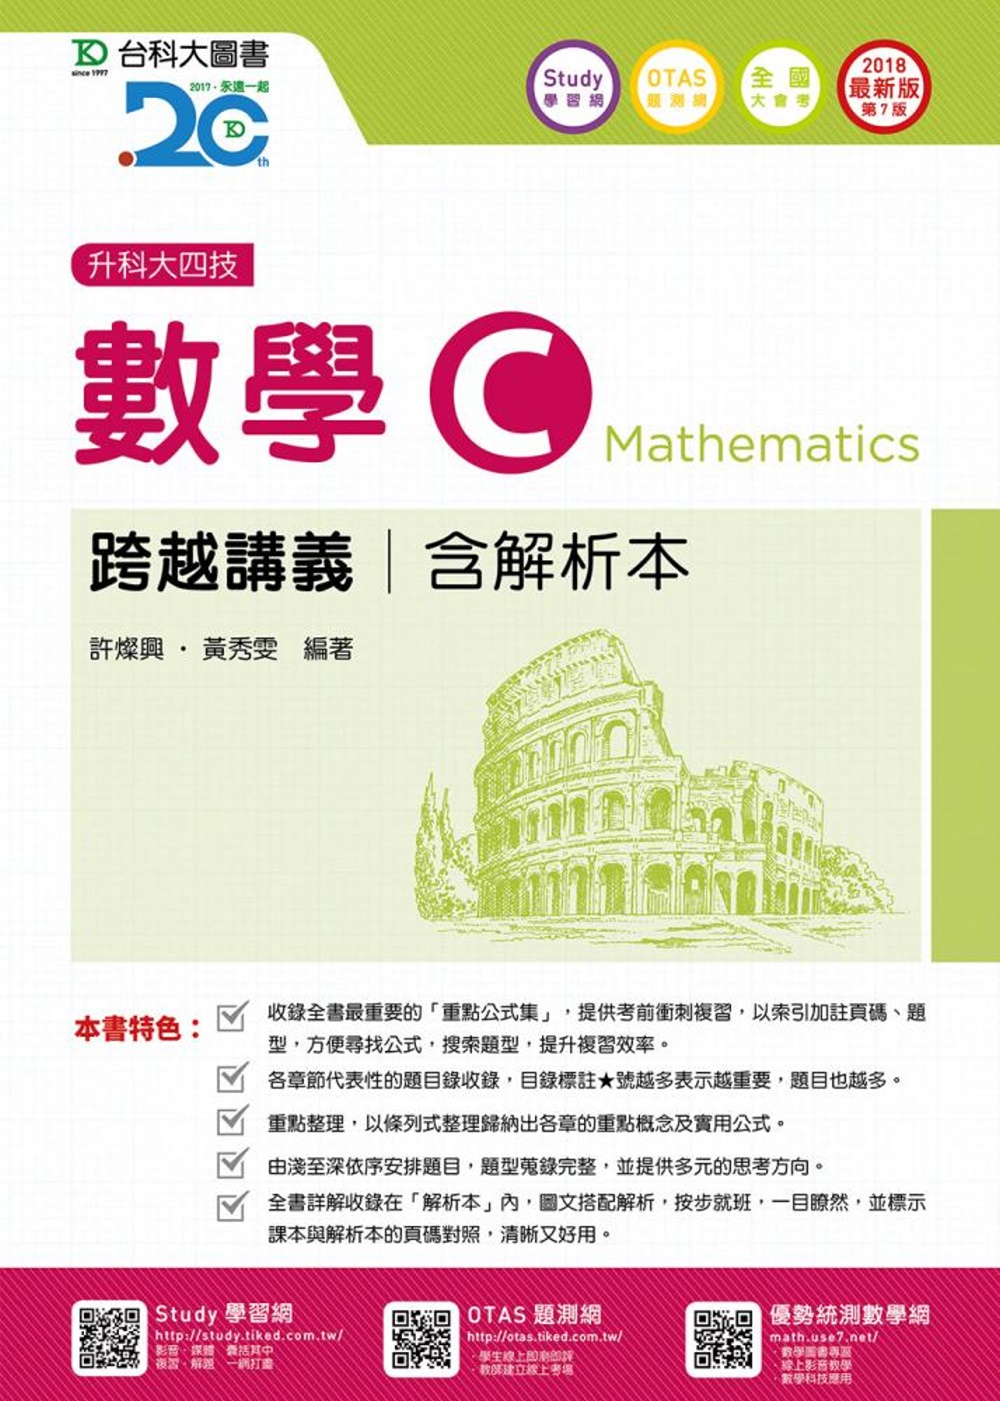 升科大四技數學 C 跨越講義含解析本 - 2018最新版(第七版) - 附贈OTAS題測系統